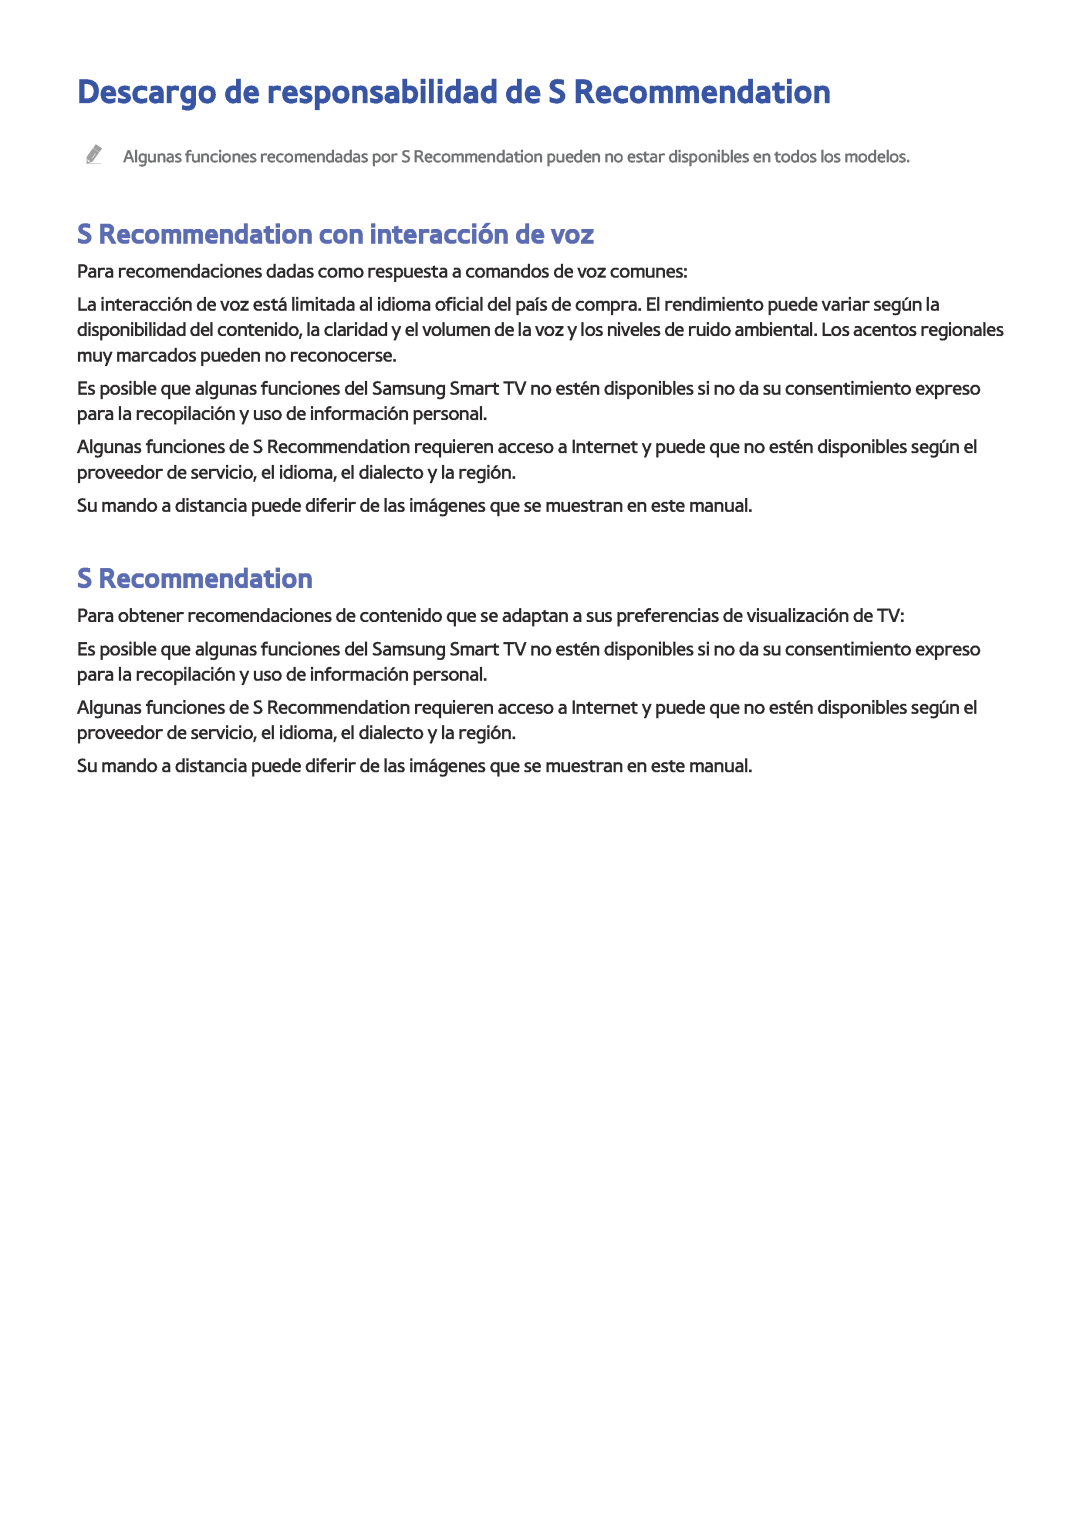 Samsung UE40J5500AKXXC manual Descargo de responsabilidad de S Recommendation, S Recommendation con interacción de voz 